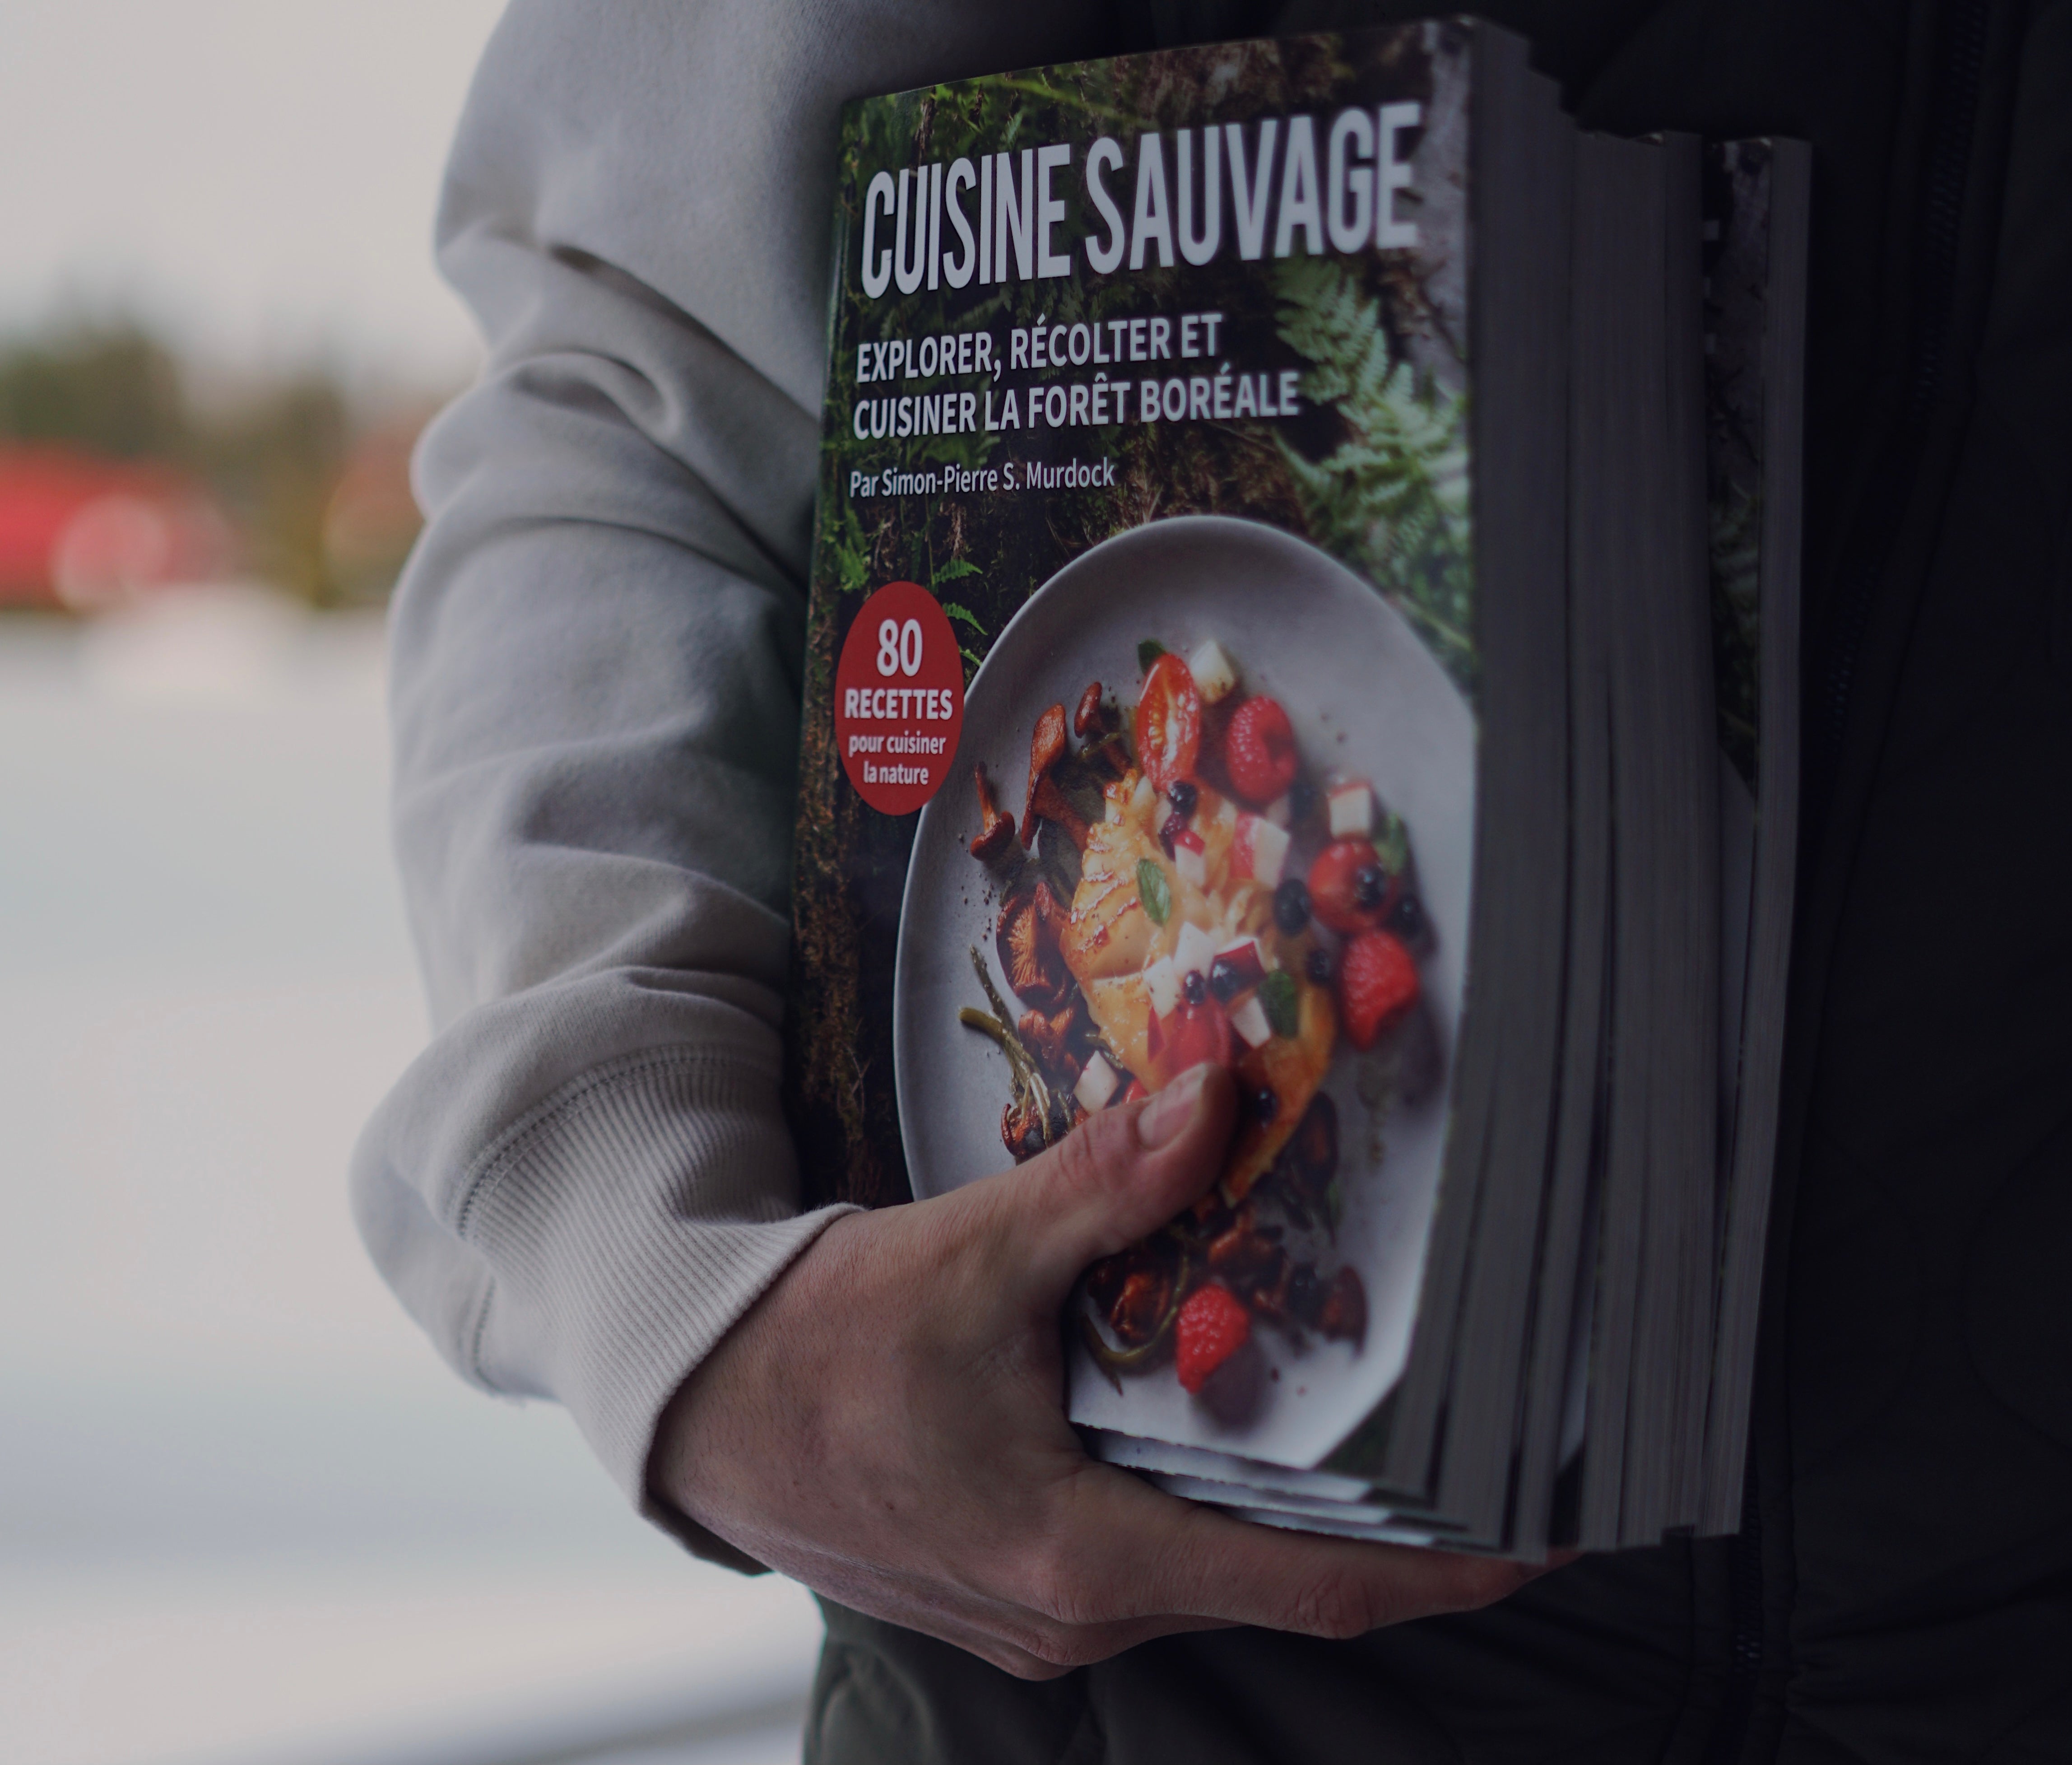 Cuisine Sauvage : explorer, récolter et cuisiner la forêt boréale